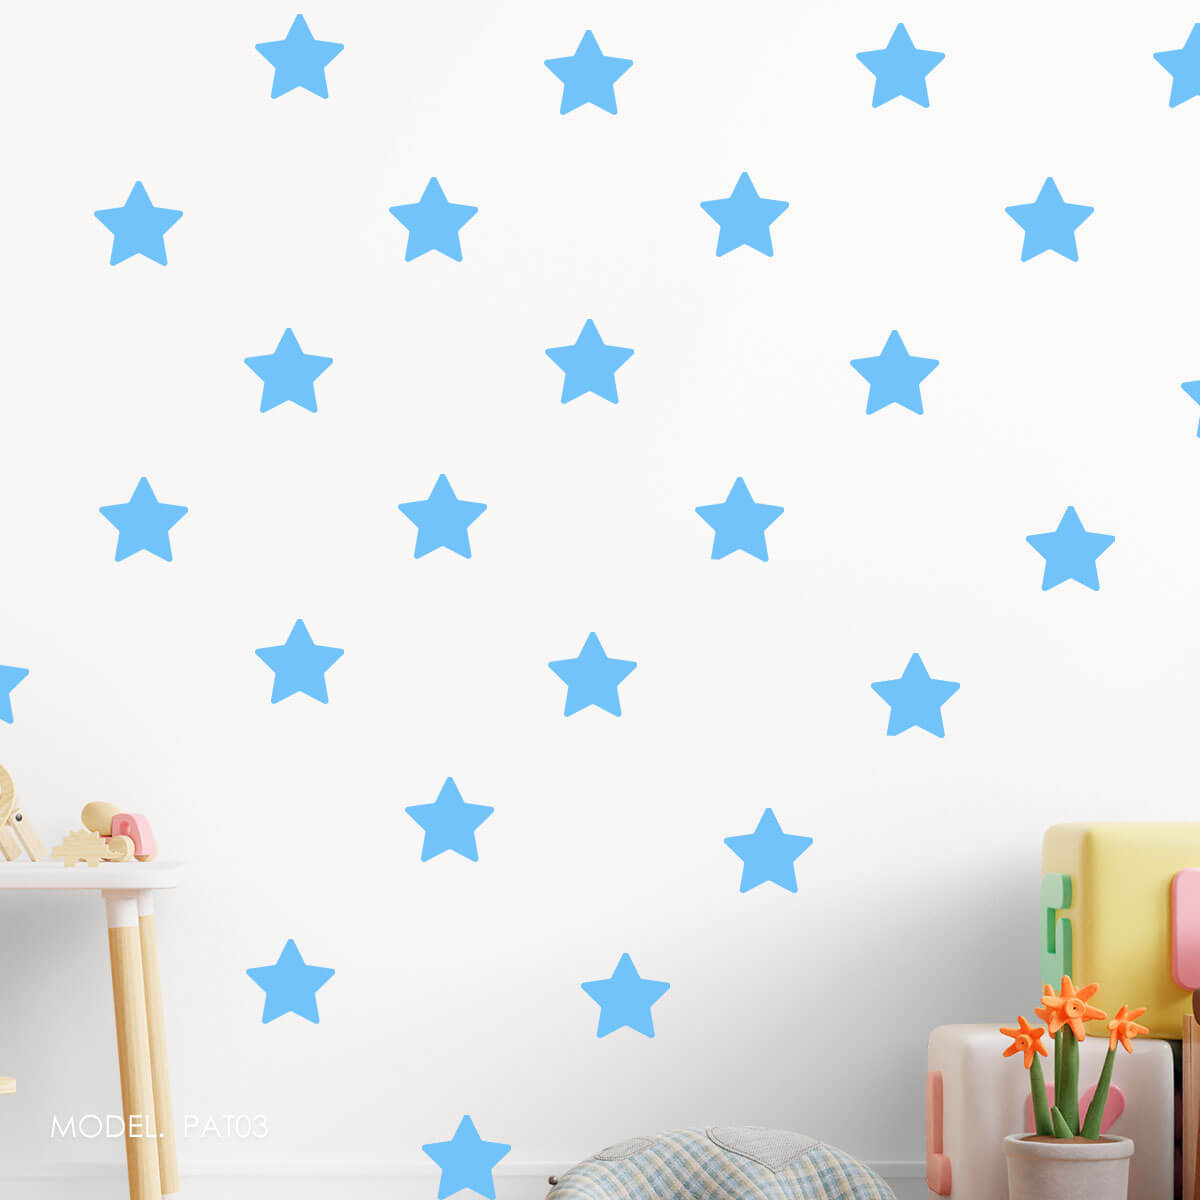 PAT03- Patrón Estrellas Azules ¡Escoge tu tonalidad de azul favorita!